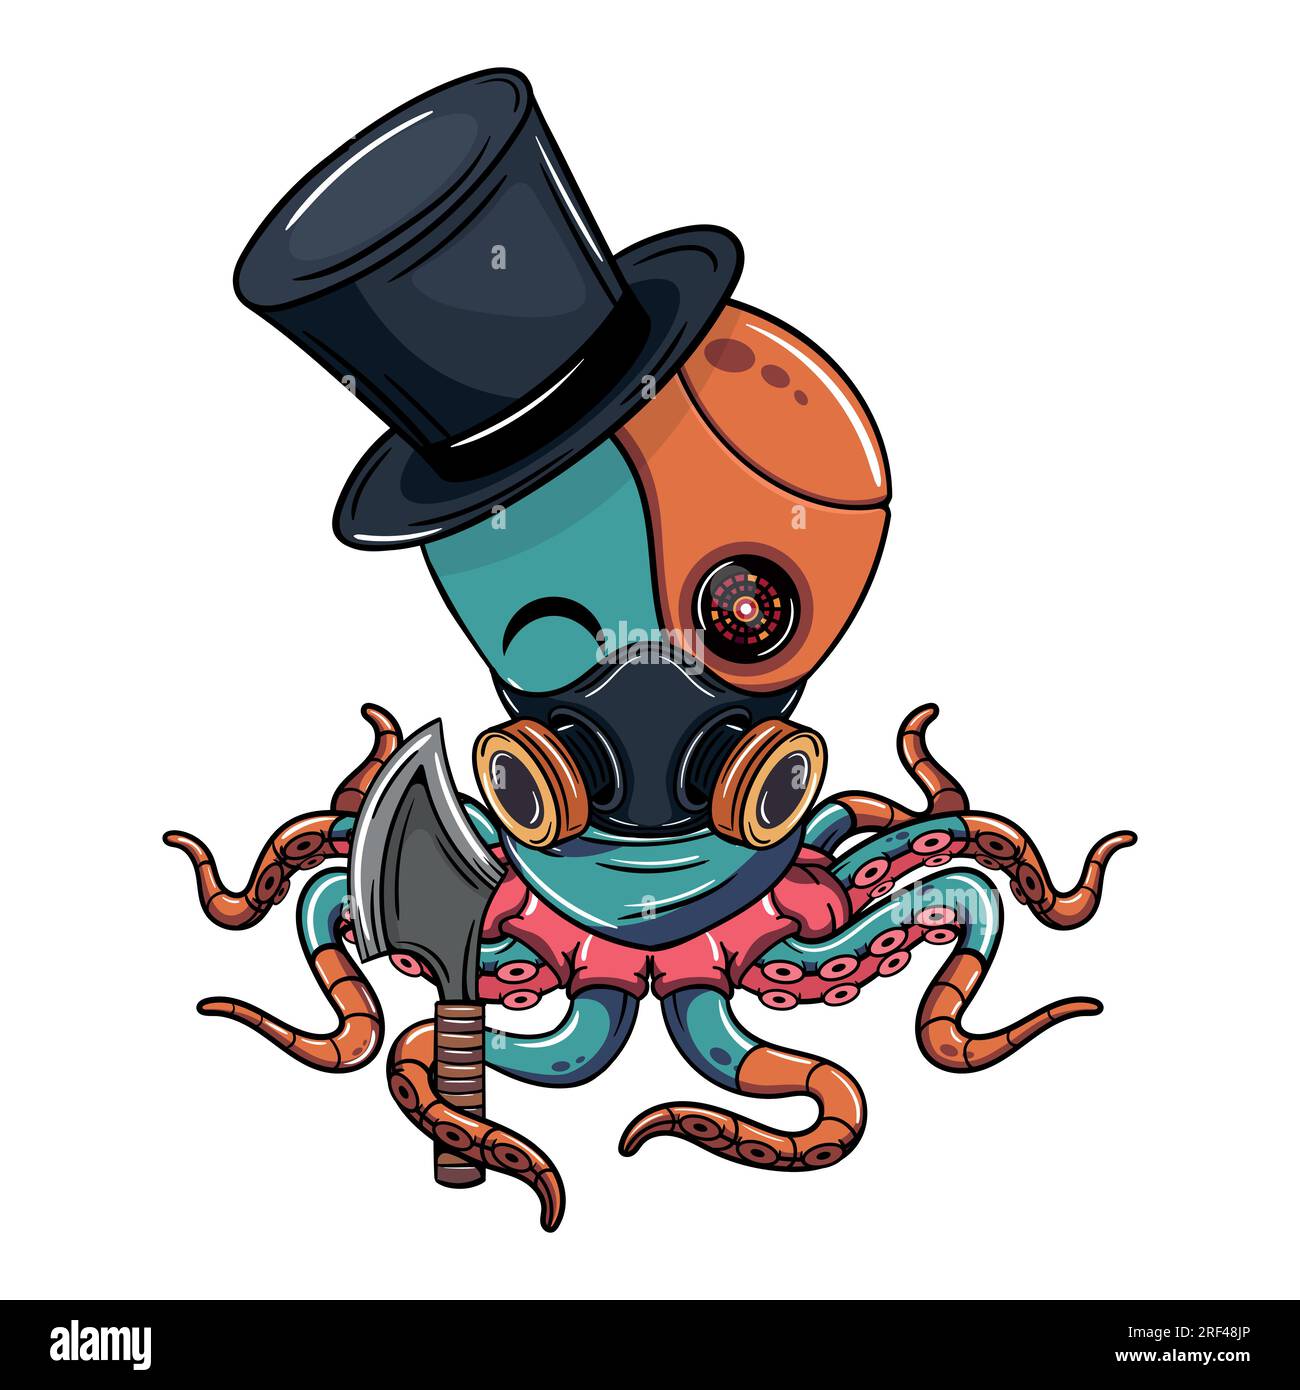 Personnage de poulpe cyborg de dessin animé avec chapeau haut de gamme et une hache. Illustration pour la fantaisie, la science-fiction et la bande dessinée d'aventure Illustration de Vecteur